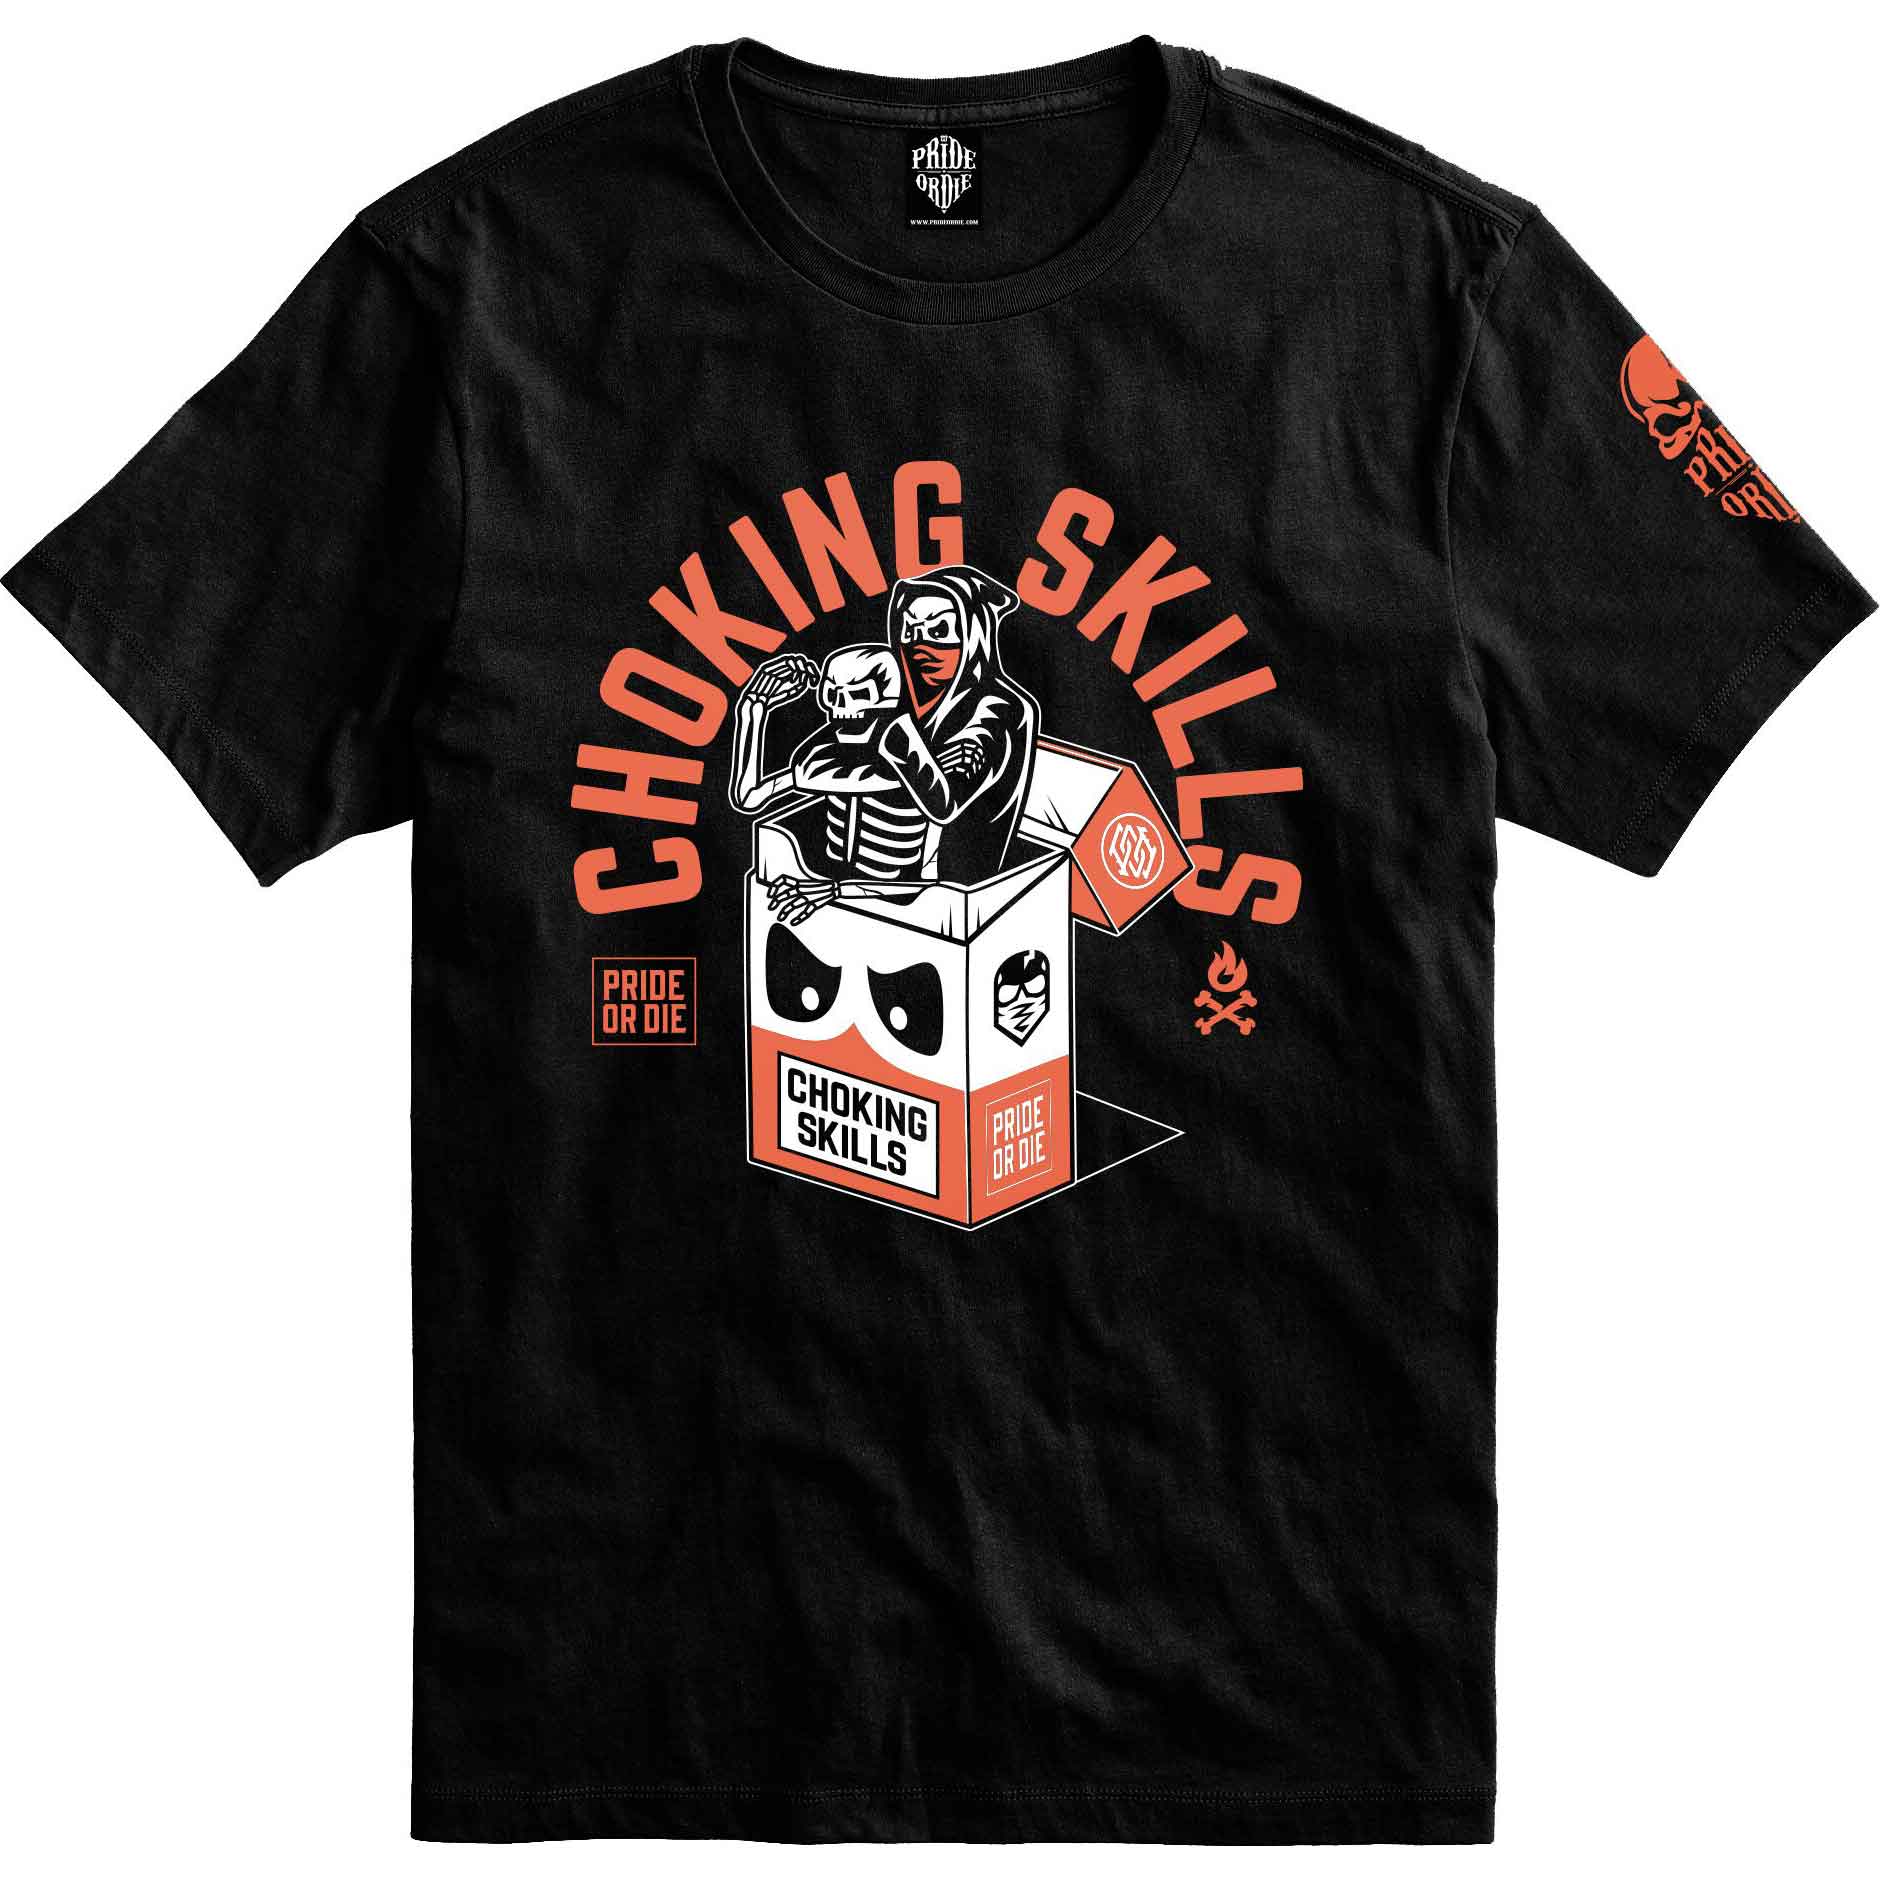 CHOKING SKILLS T-shirt／チョーキング・スカル Tシャツ